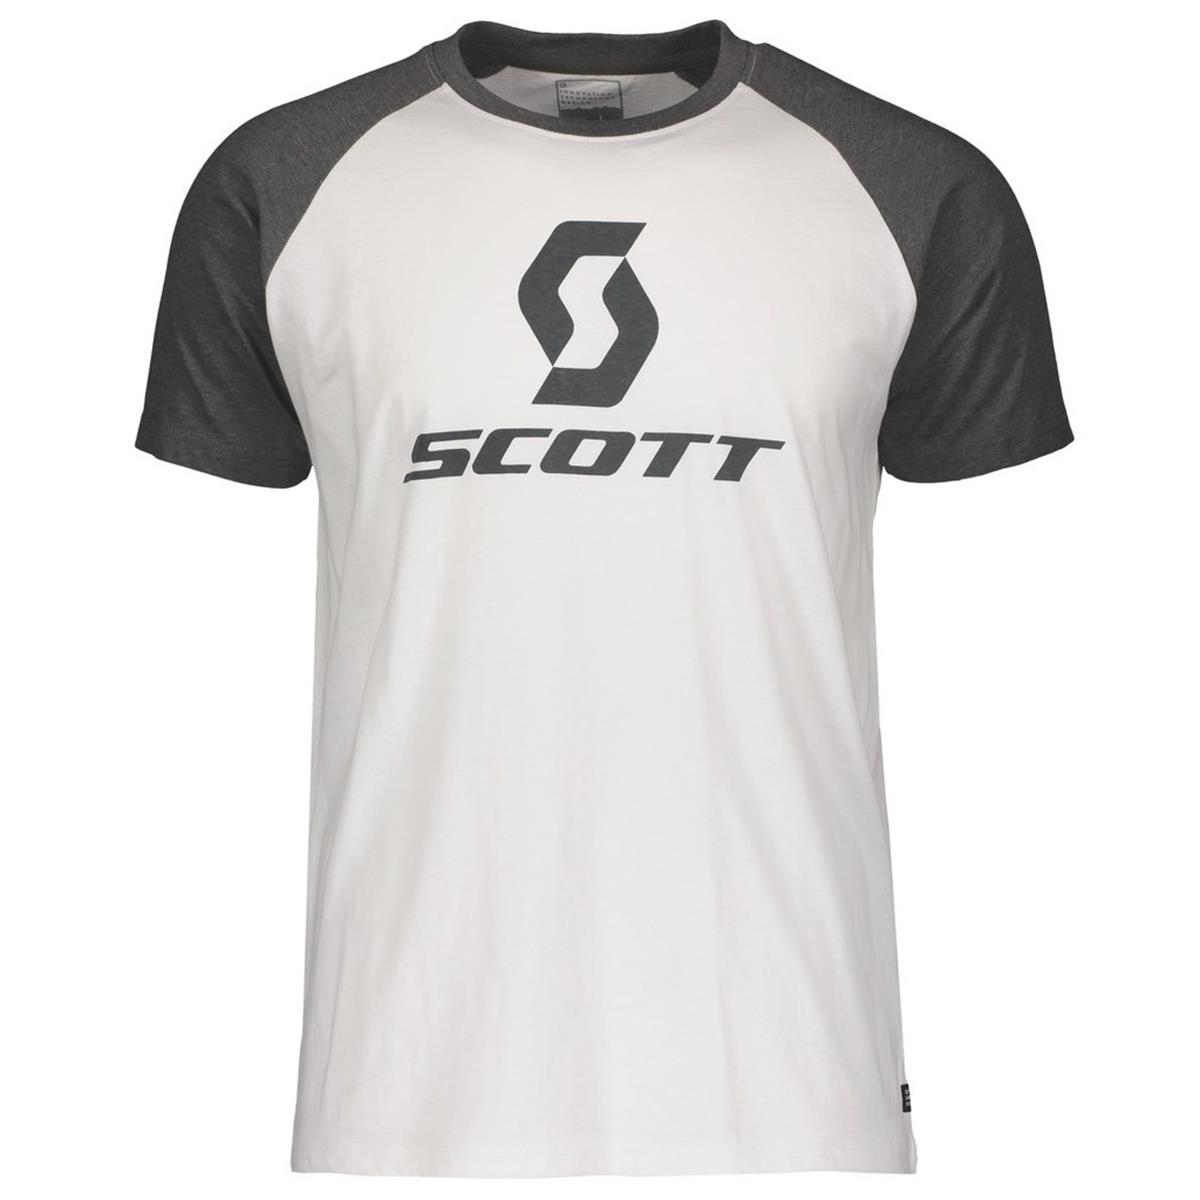 Scott T-Shirt 10 Icon Raglan Bianco/Grigio Scuro Melang